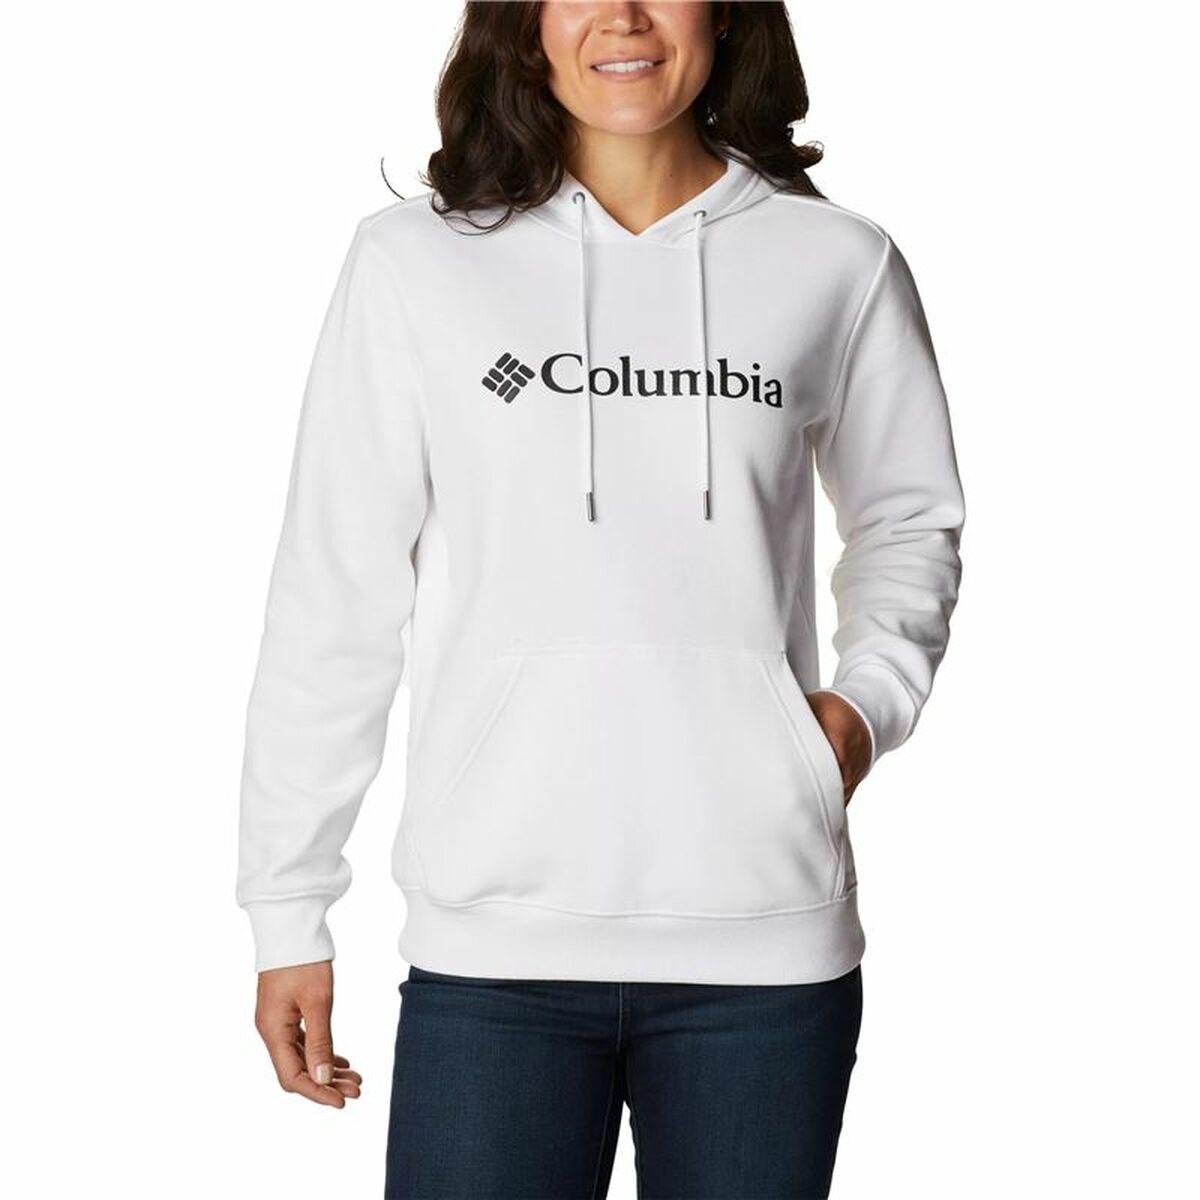 Billede af Hættetrøje til Kvinde Columbia Logo Hvid XS